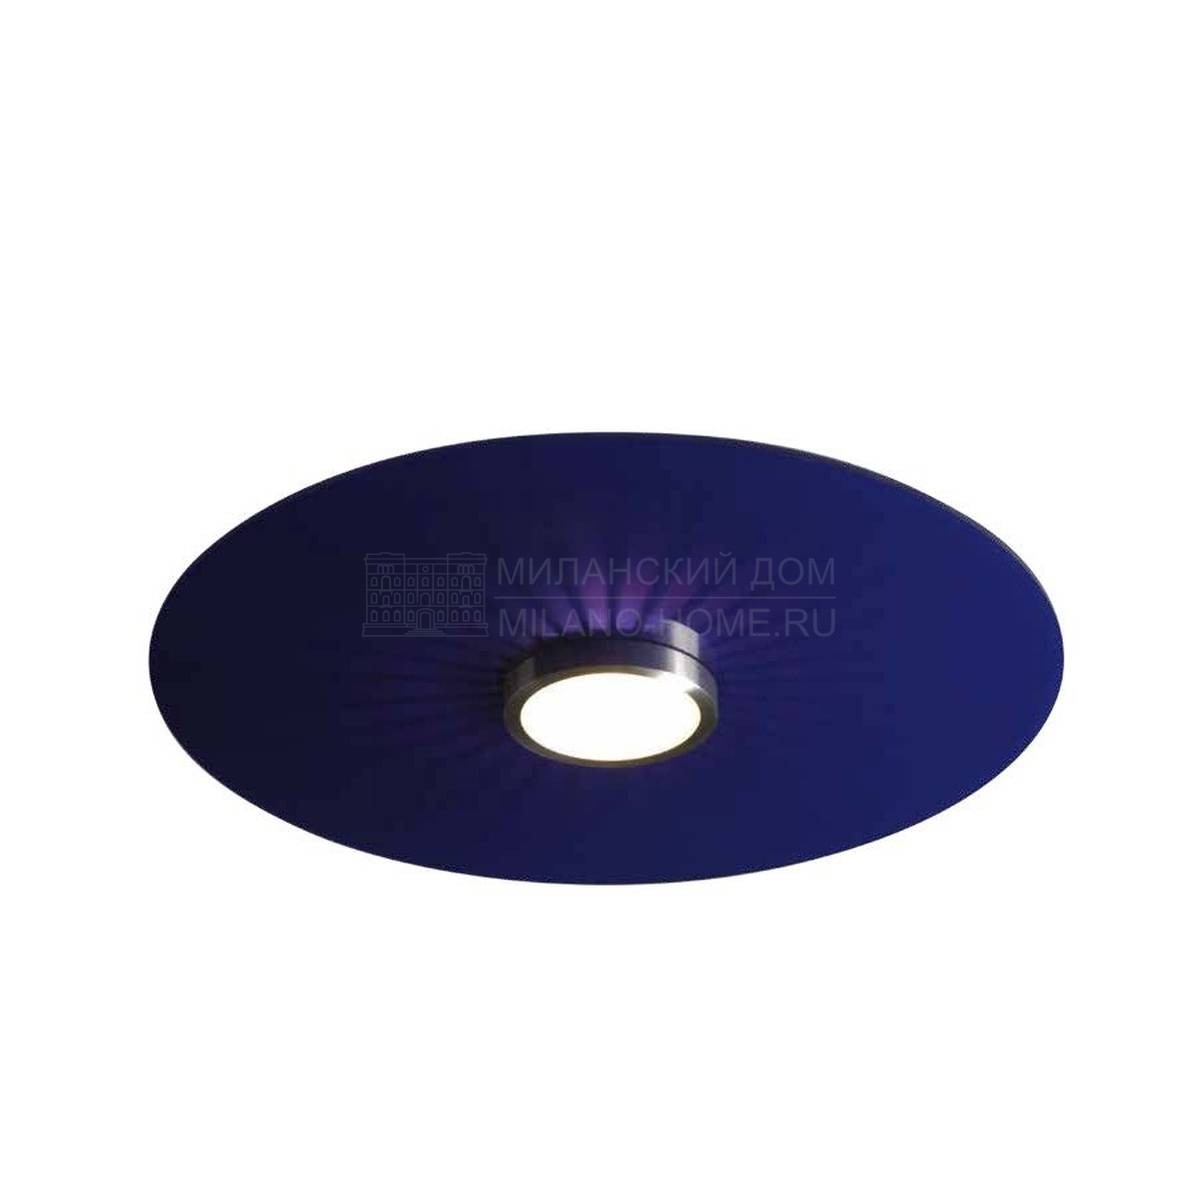 Потолочный светильник Disc из Бельгии фабрики LINEA VERDACE